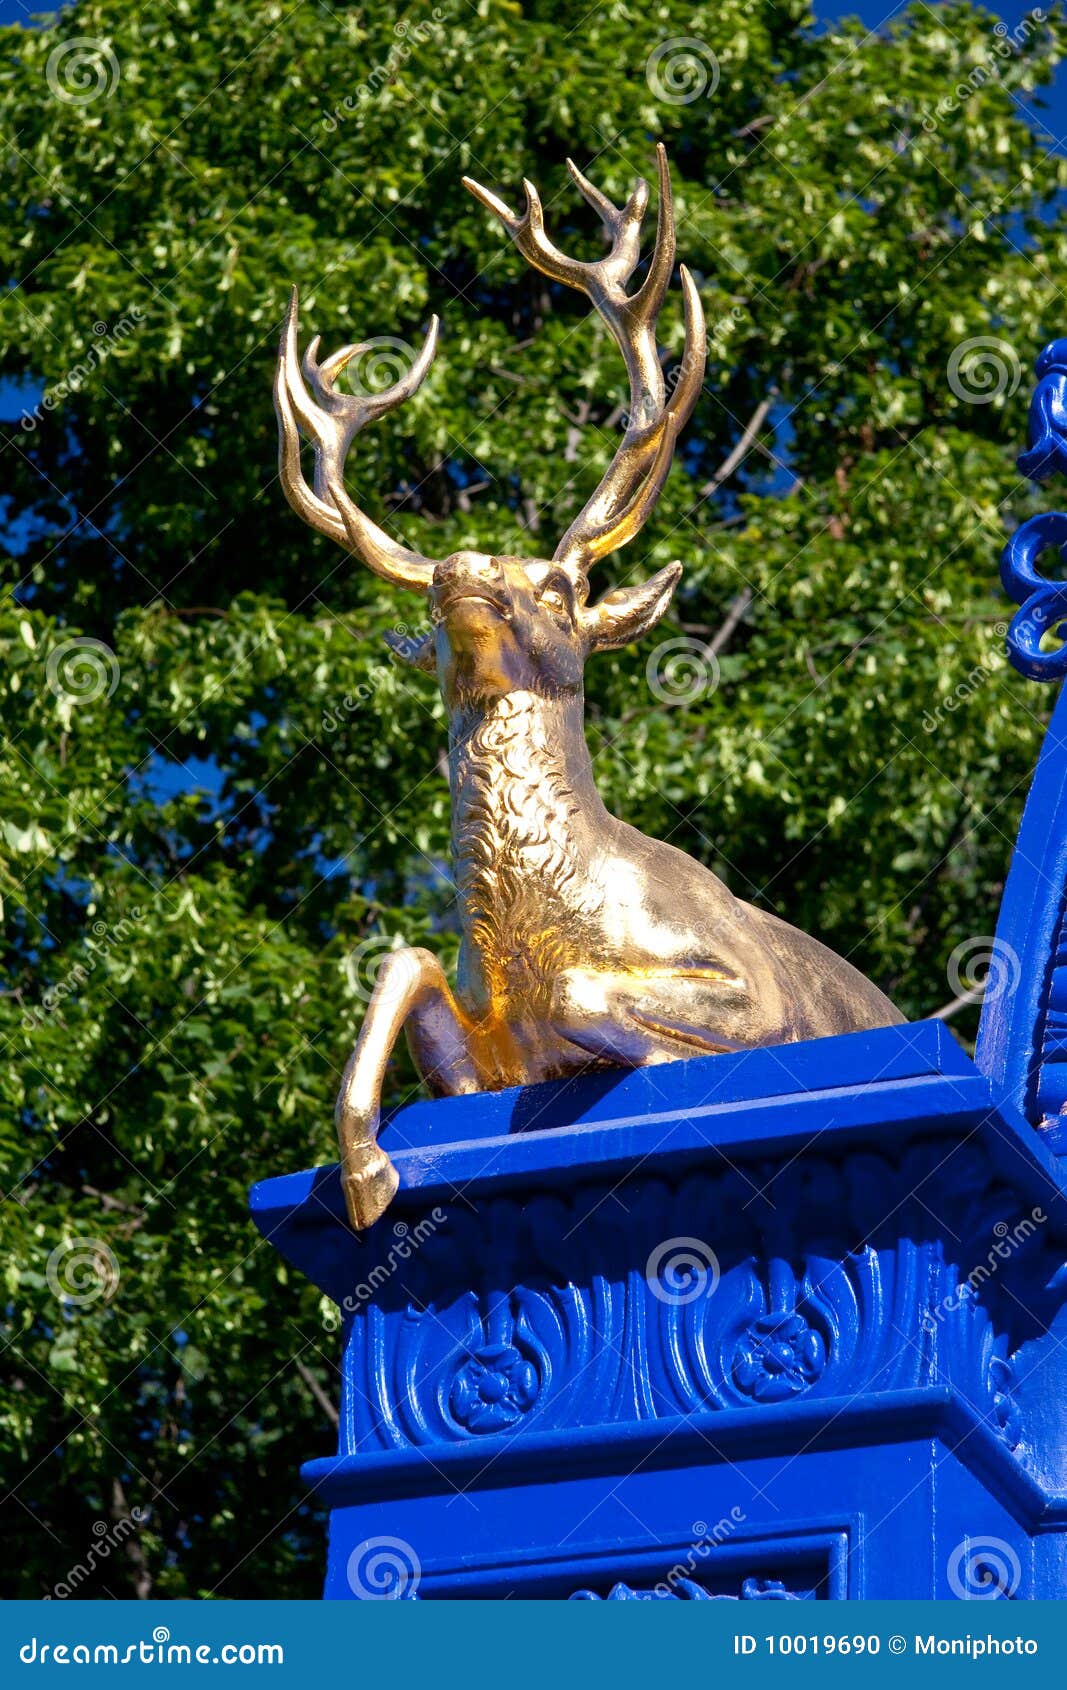 golden deer in the royal park djurgarden,stockholm